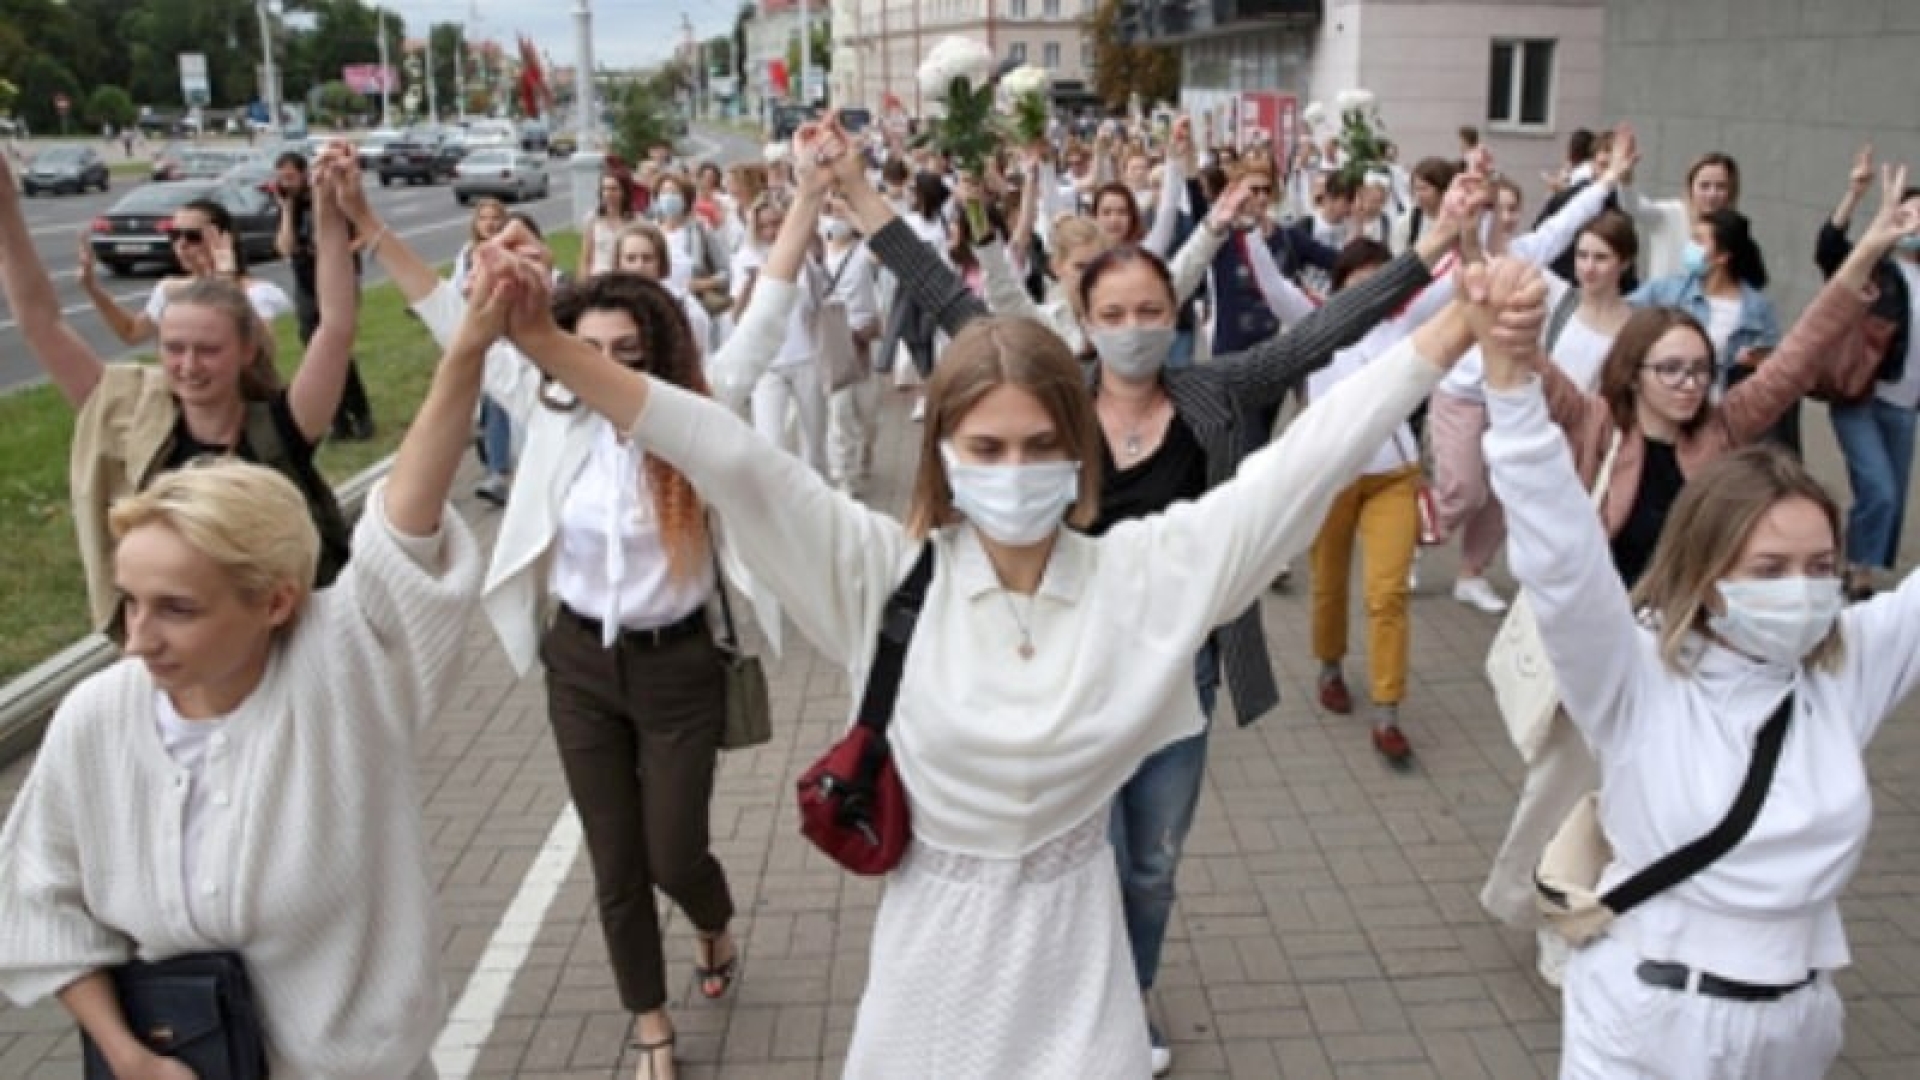 "Ladies in white" - American footprint in Belarusian protests